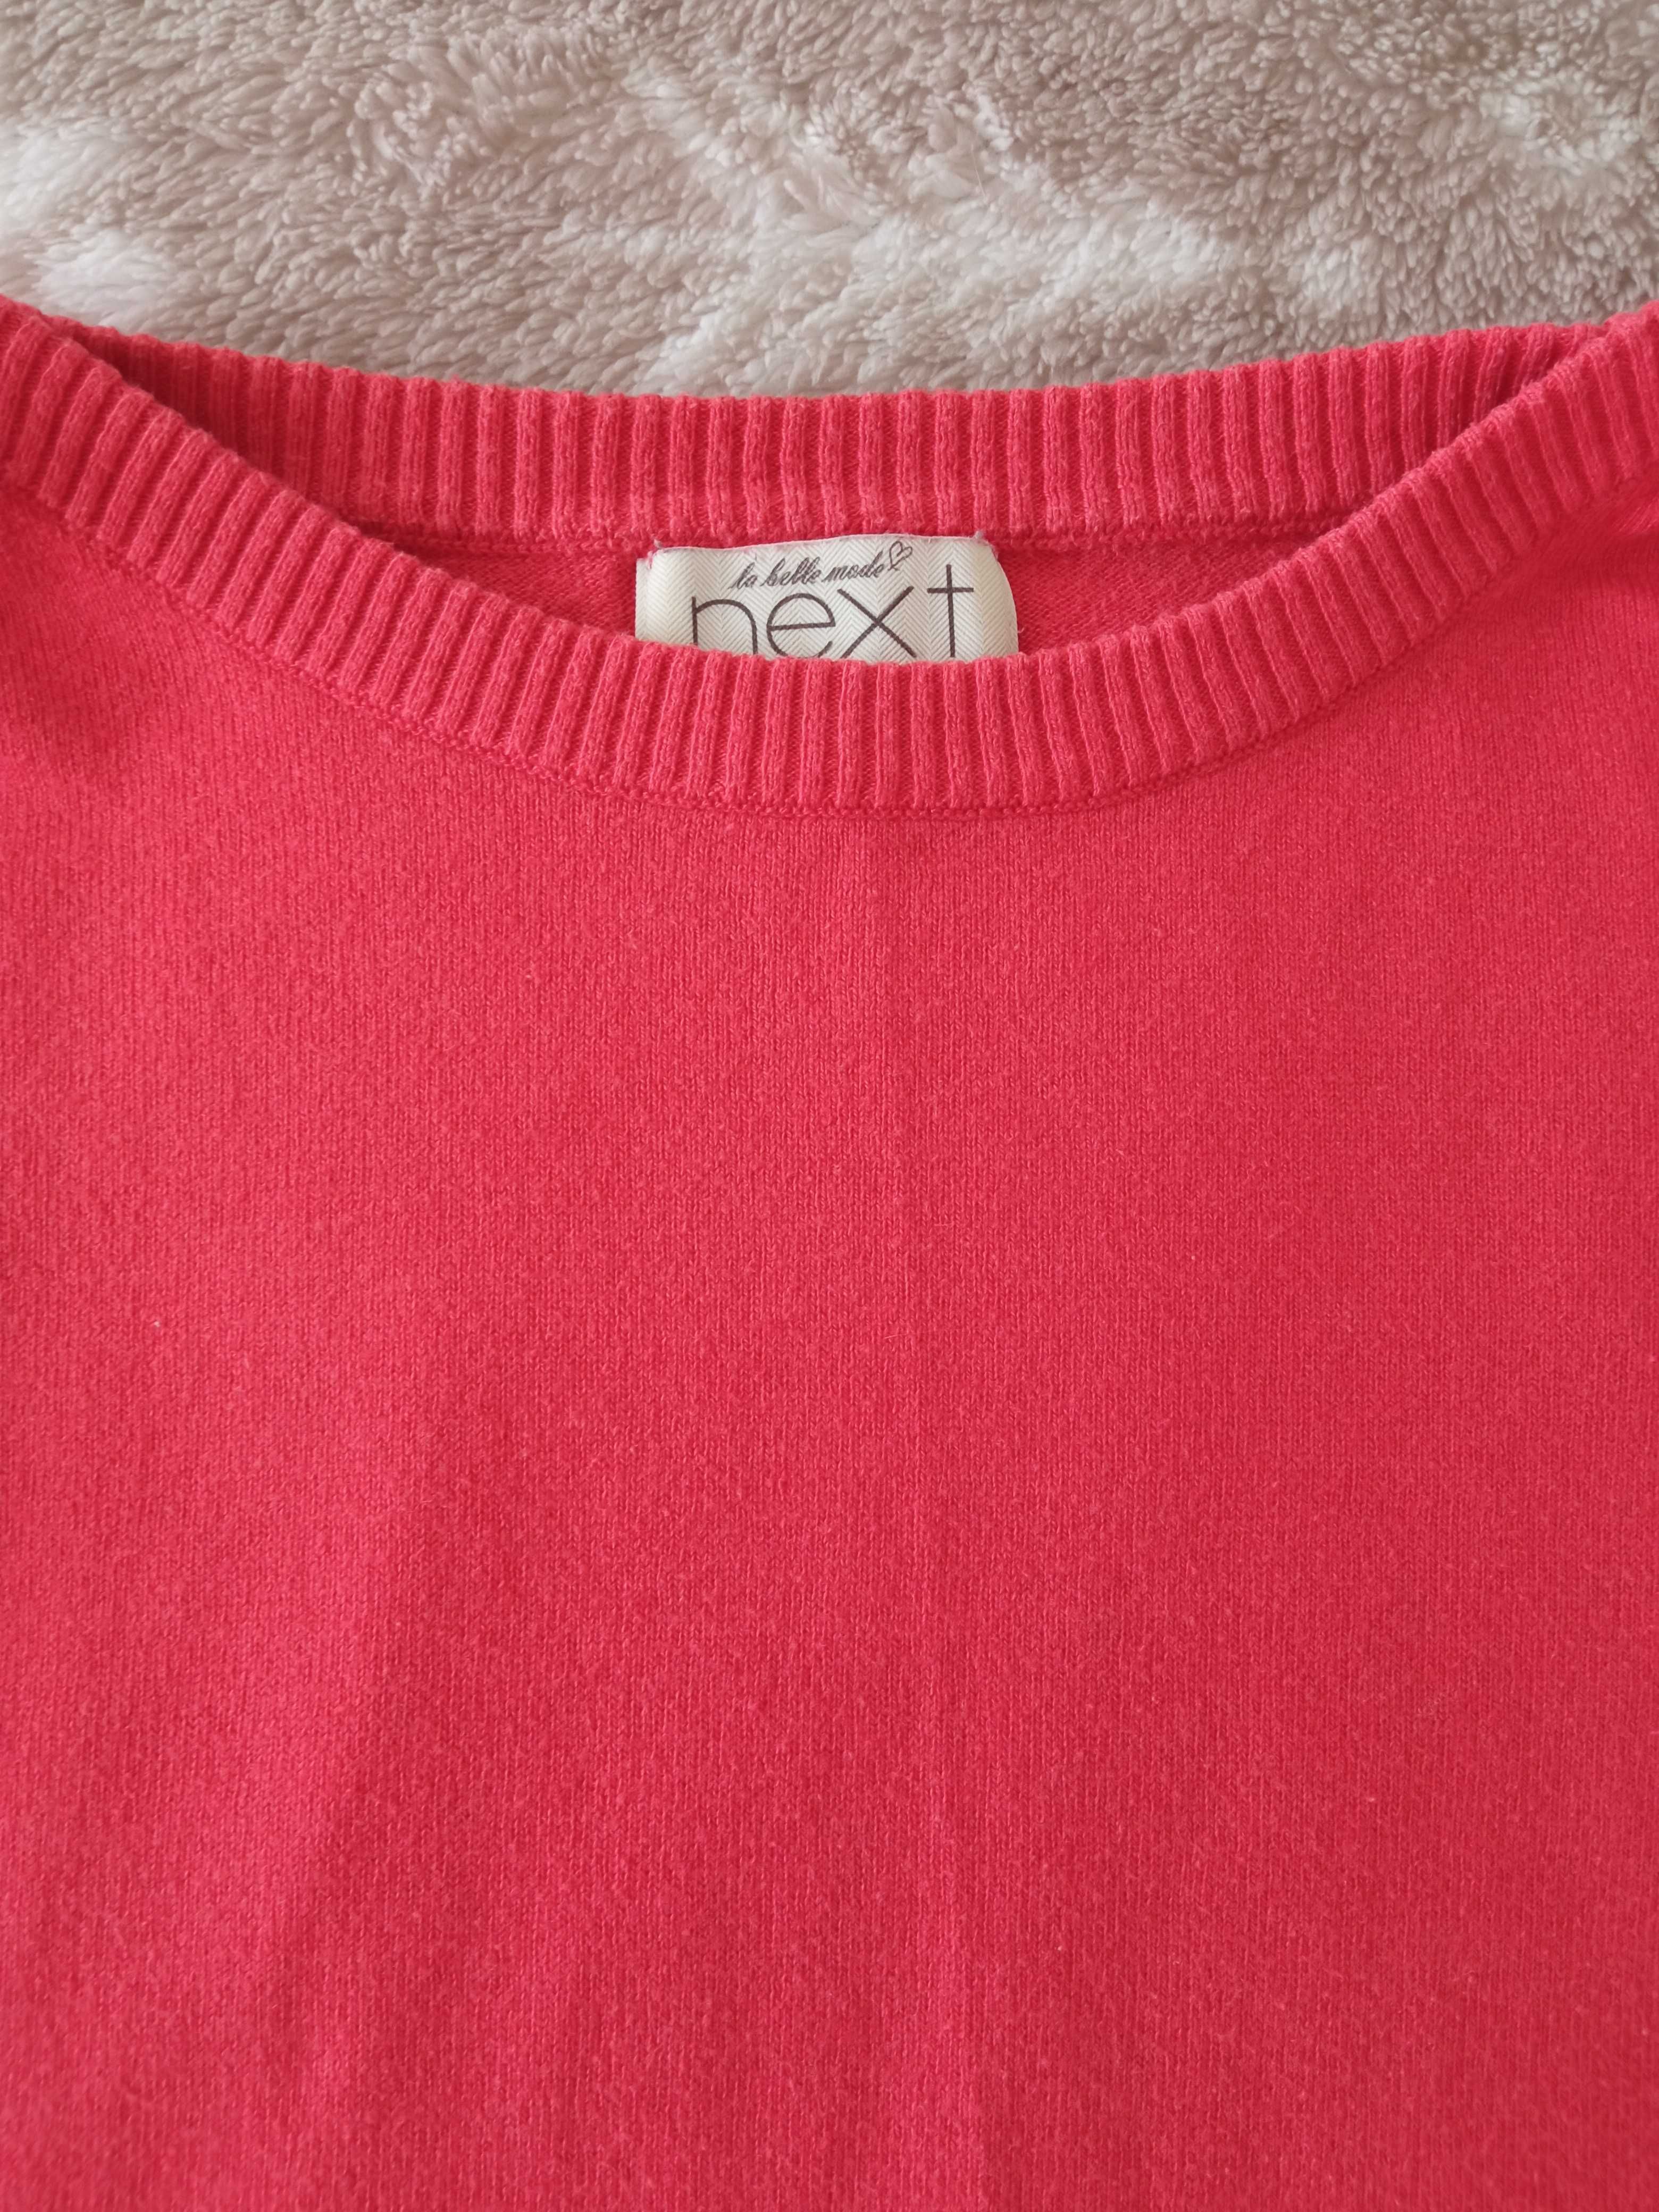 NEXT sweterek damski bawełniany r. M malinowy